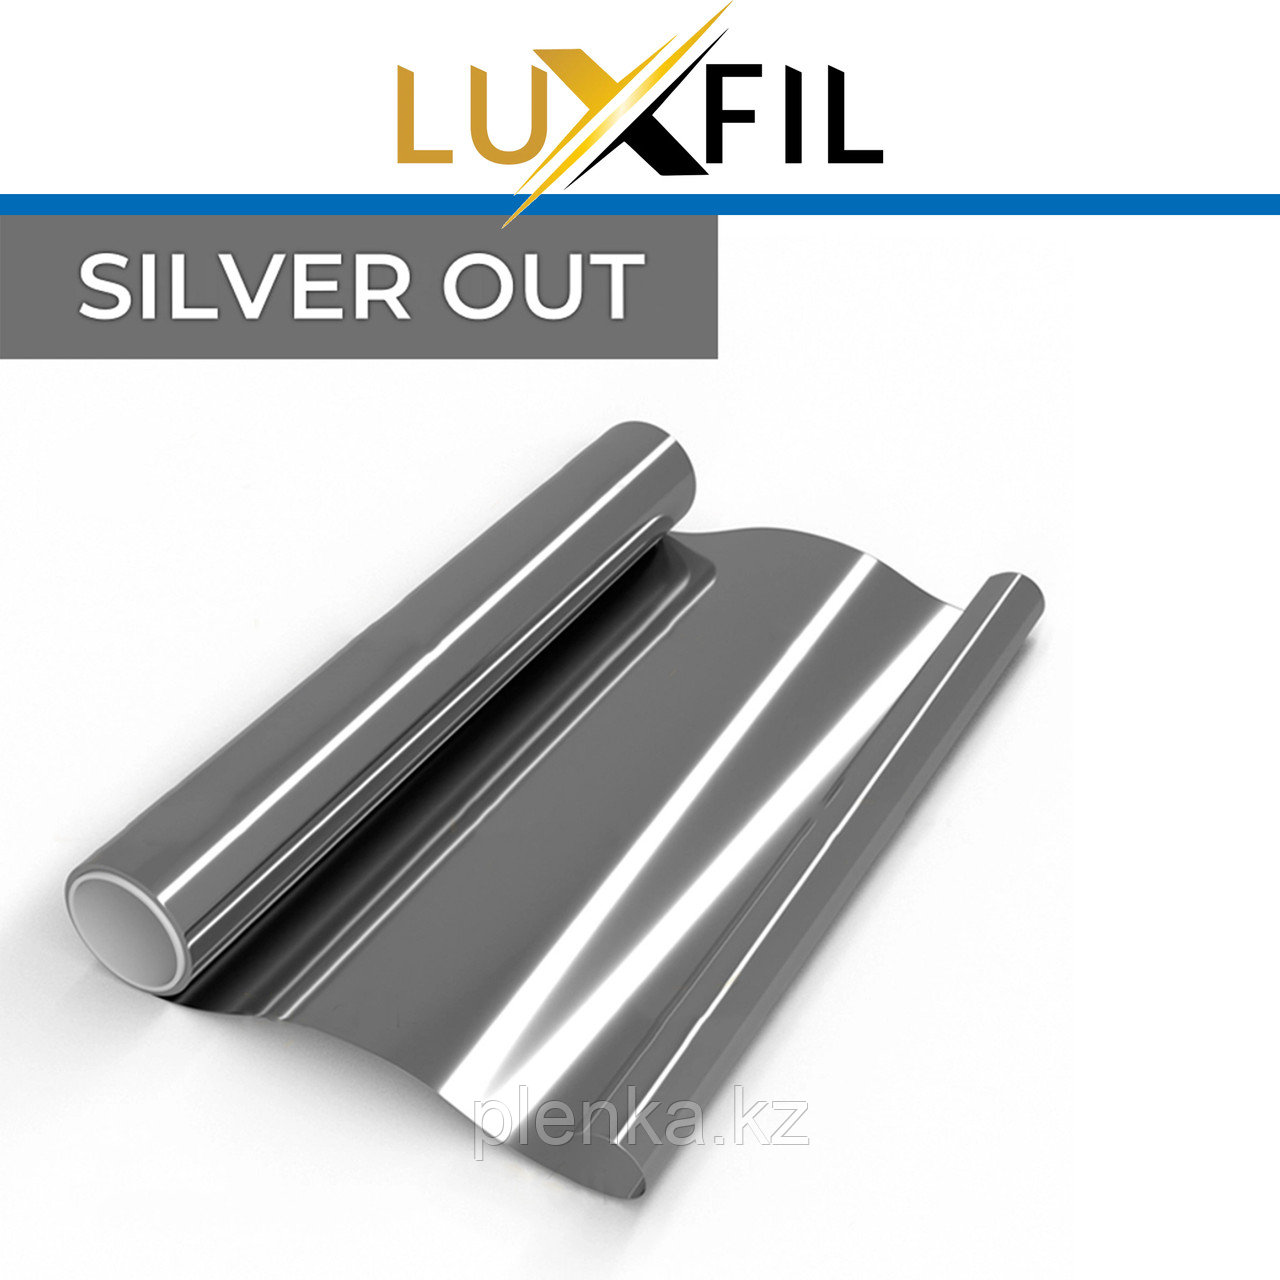 Плёнка Silver out, серебро, непрозрачная, 0% пропускание света. Цена за 1 кв.м.